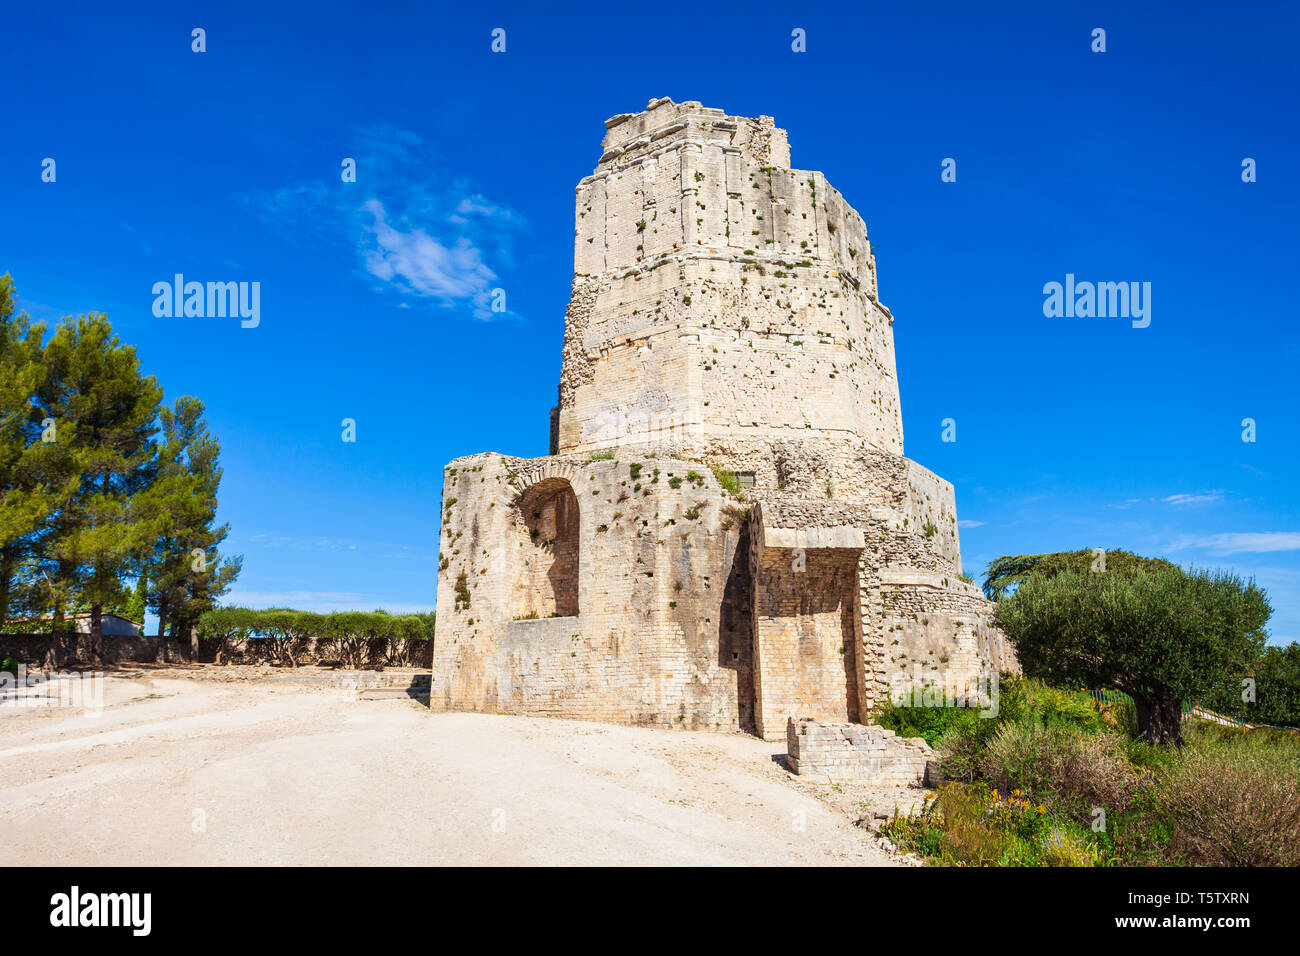 La tour Tour Magne est un monument romain situé dans la ville de Nîmes dans le sud de la France Banque D'Images